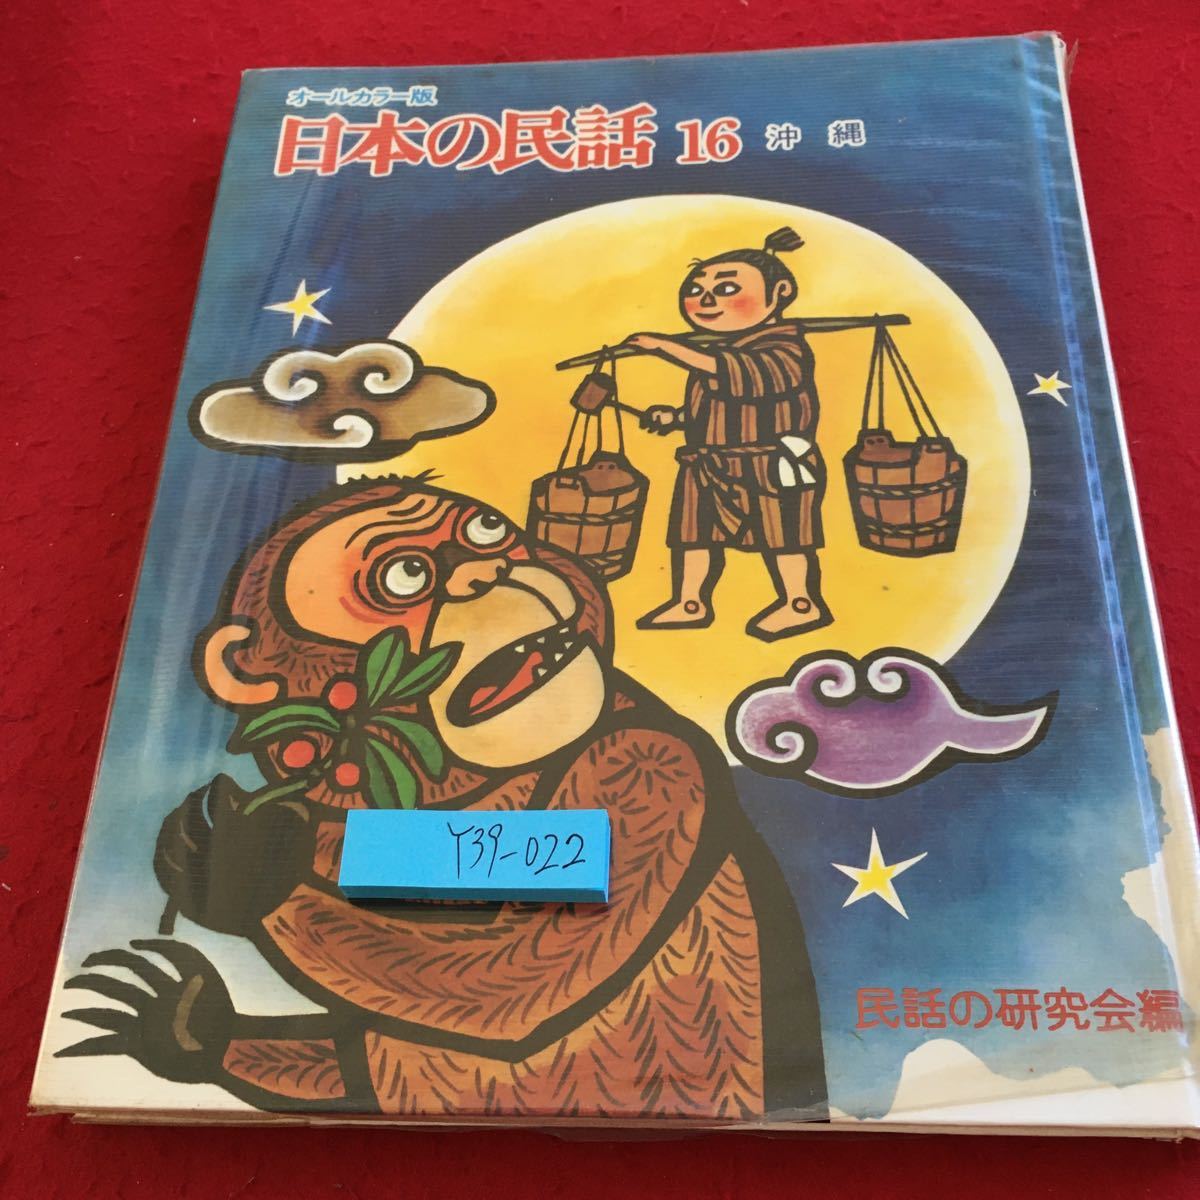 Y39-022 все цвет версия японский народные сказки 16 Okinawa народные сказки. изучение . сборник мир культура фирма сосна ....*.. Kazuo .. выпуск день неизвестен месяц .. ...a kana - и т.п. 